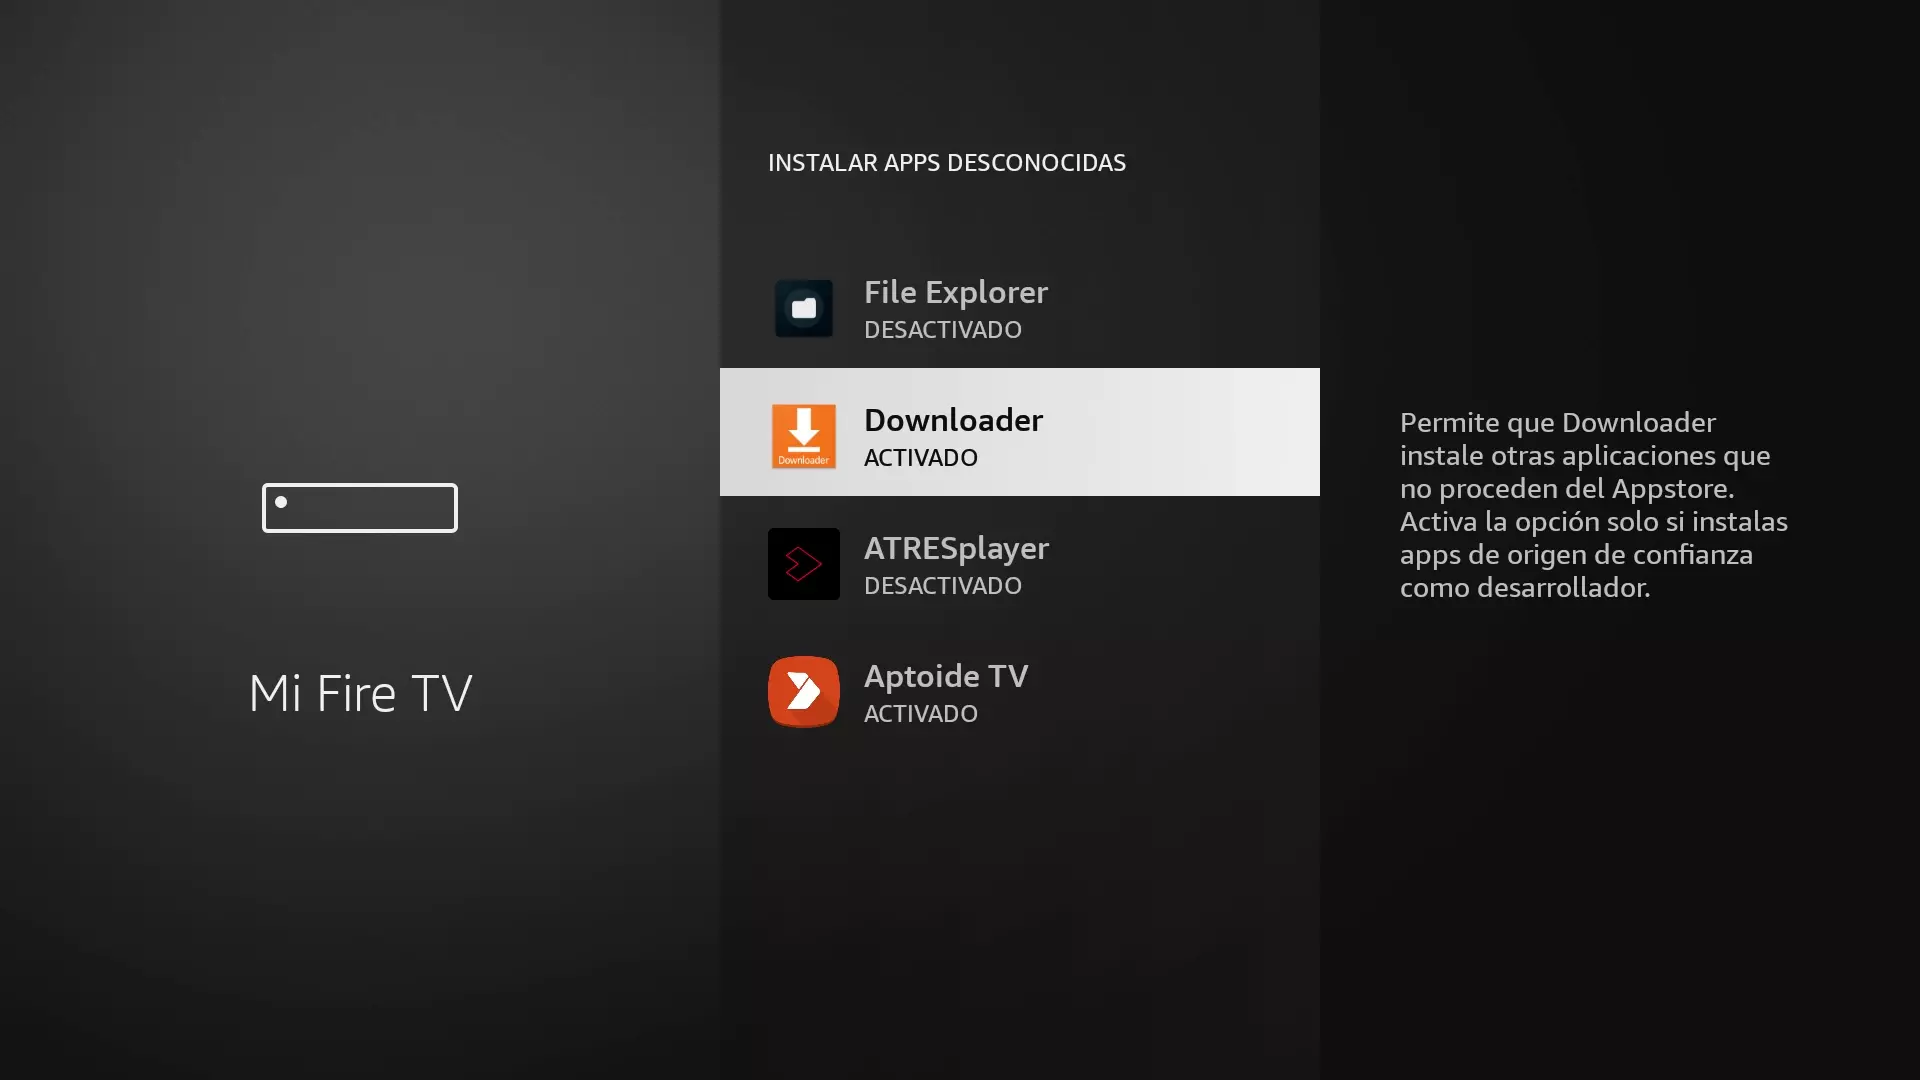 Permiso activado para que Downloader instale apps desconocidas en el Fire TV Stick